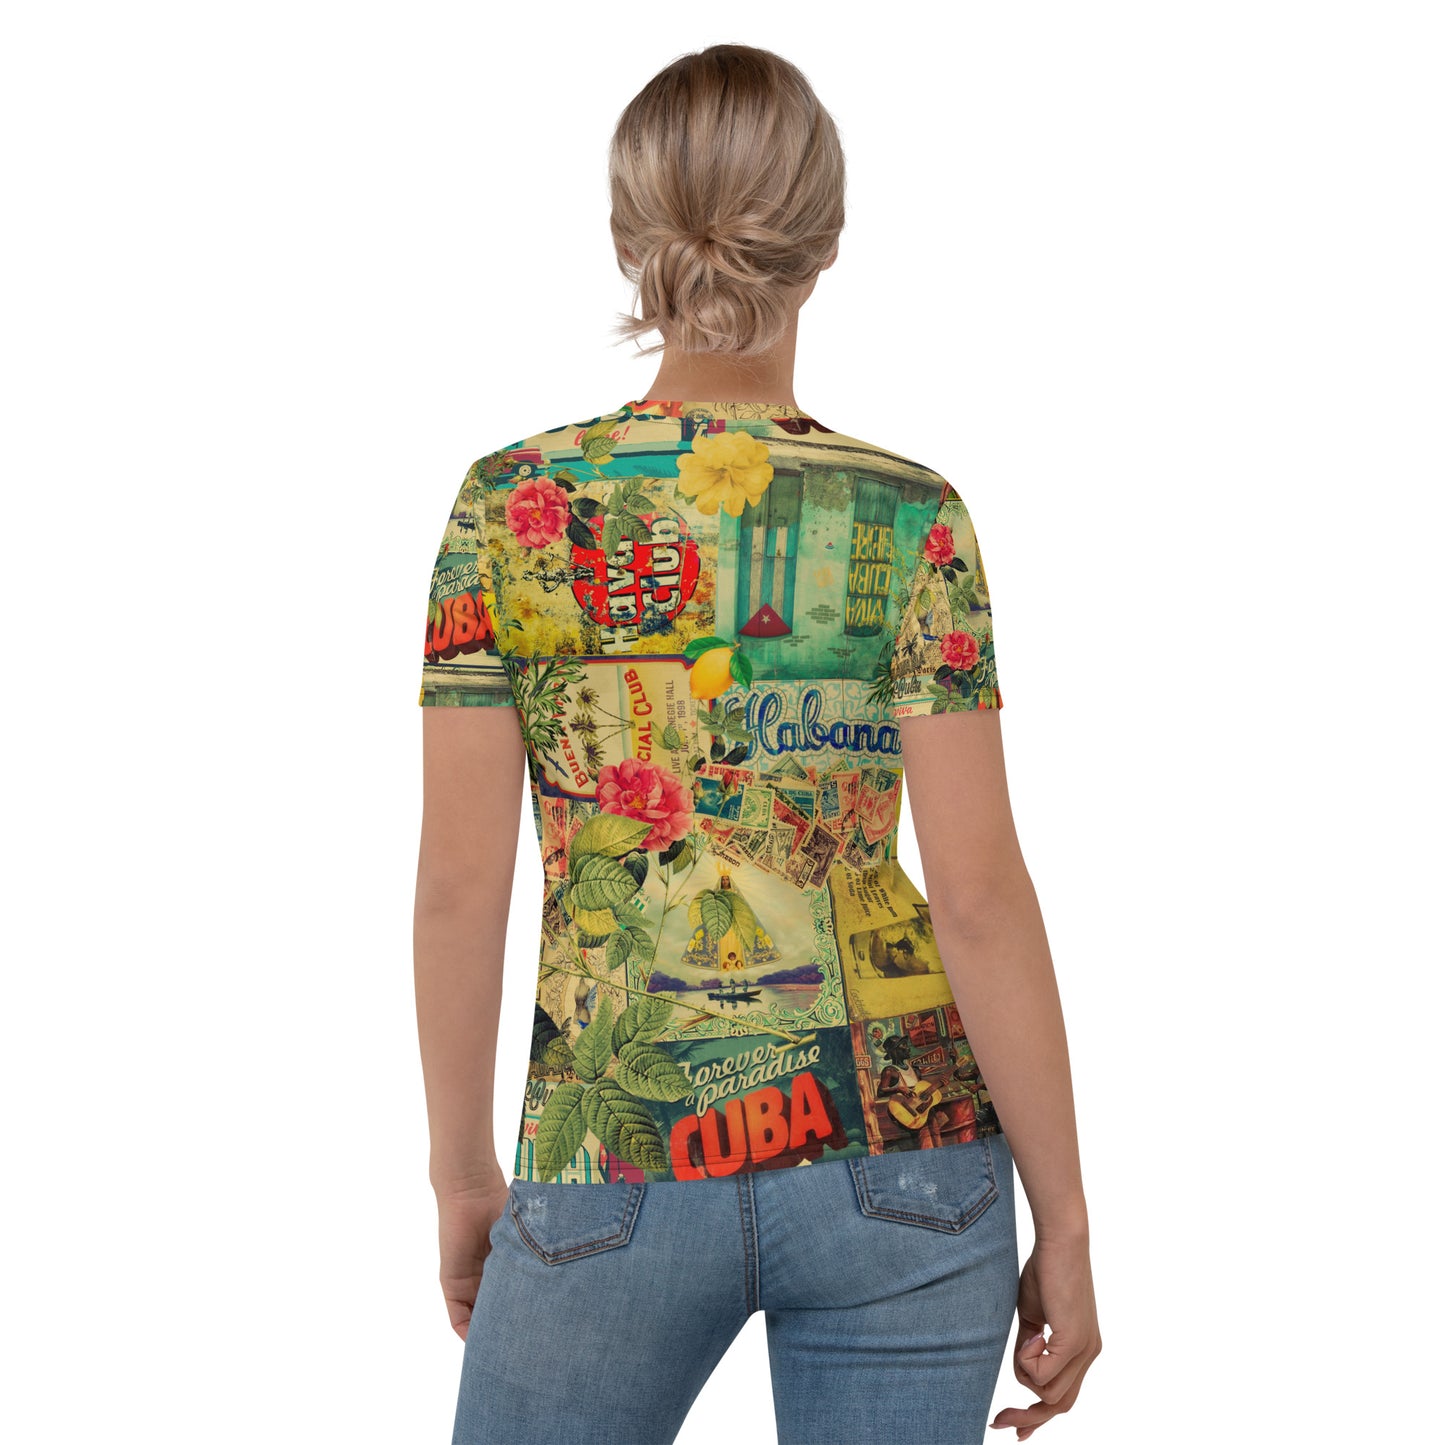 Calle Cuba Women's T-shirt